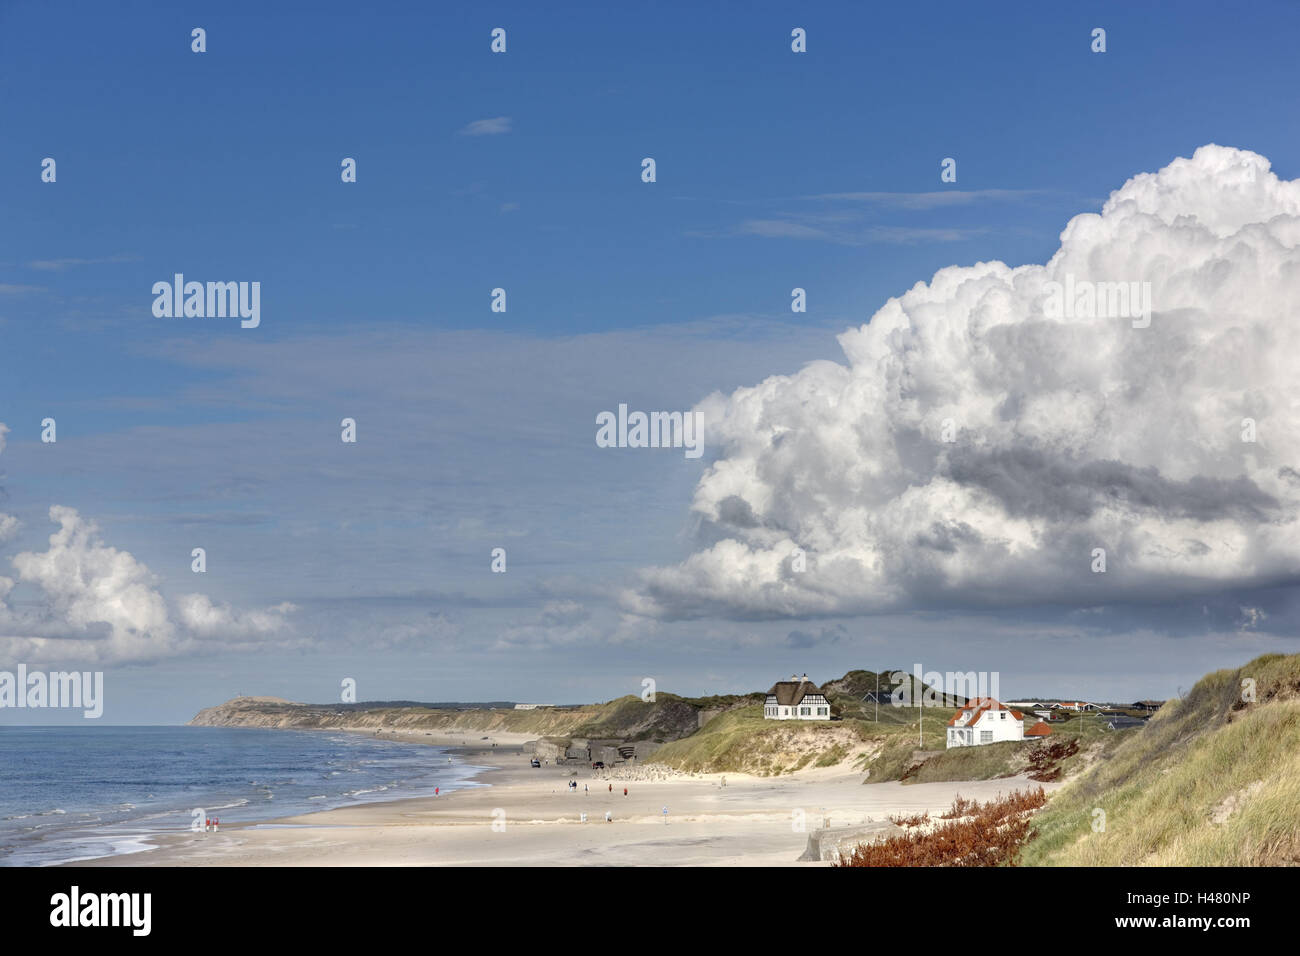 Dinamarca, Jutlandia, Løkken, Playa, Casas, el mar, el cielo, vacaciones resort, playa de arena, mar del Norte, los cochecitos, las personas, los turistas, el clima, el sol, las nubes, Foto de stock